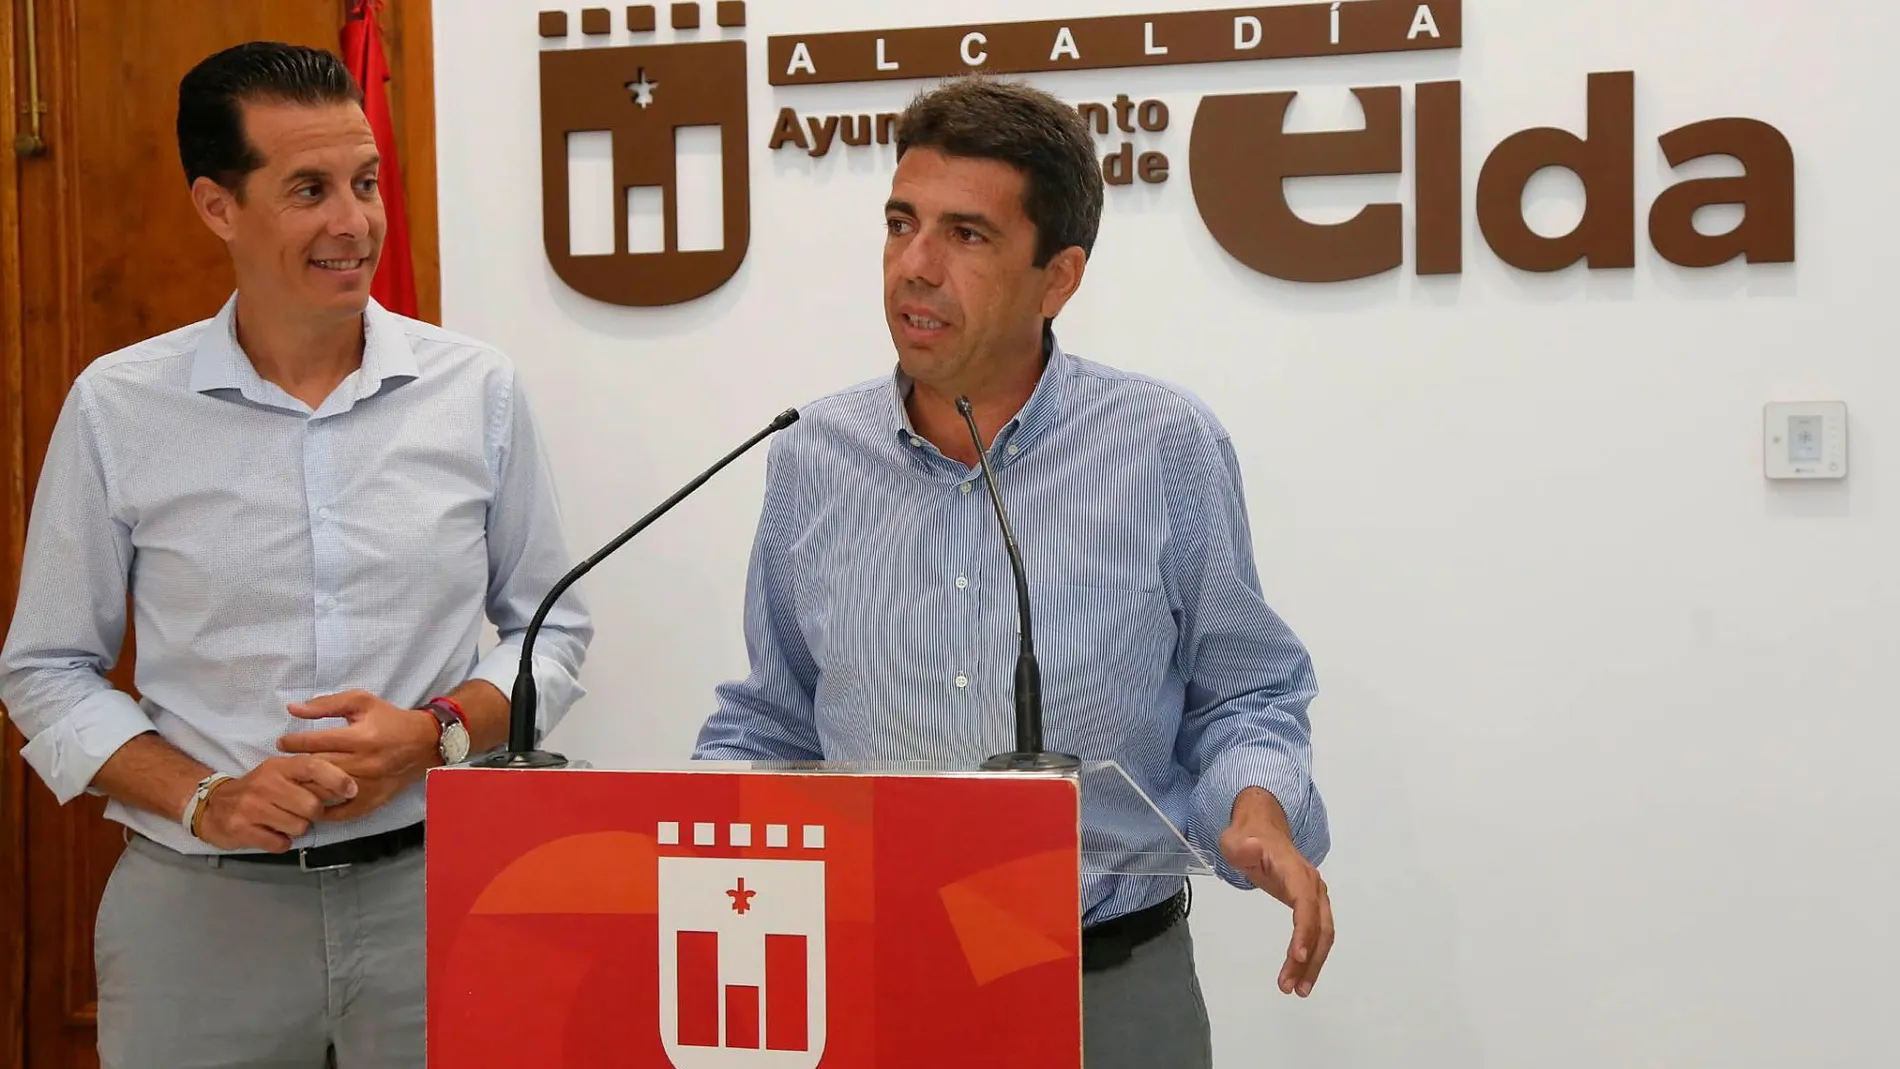 El alcalde de Elda, Rubén Alfaro, (izq.) junto al presidente de la Diputación de Alicante, Carlos Mazón (dcha.)